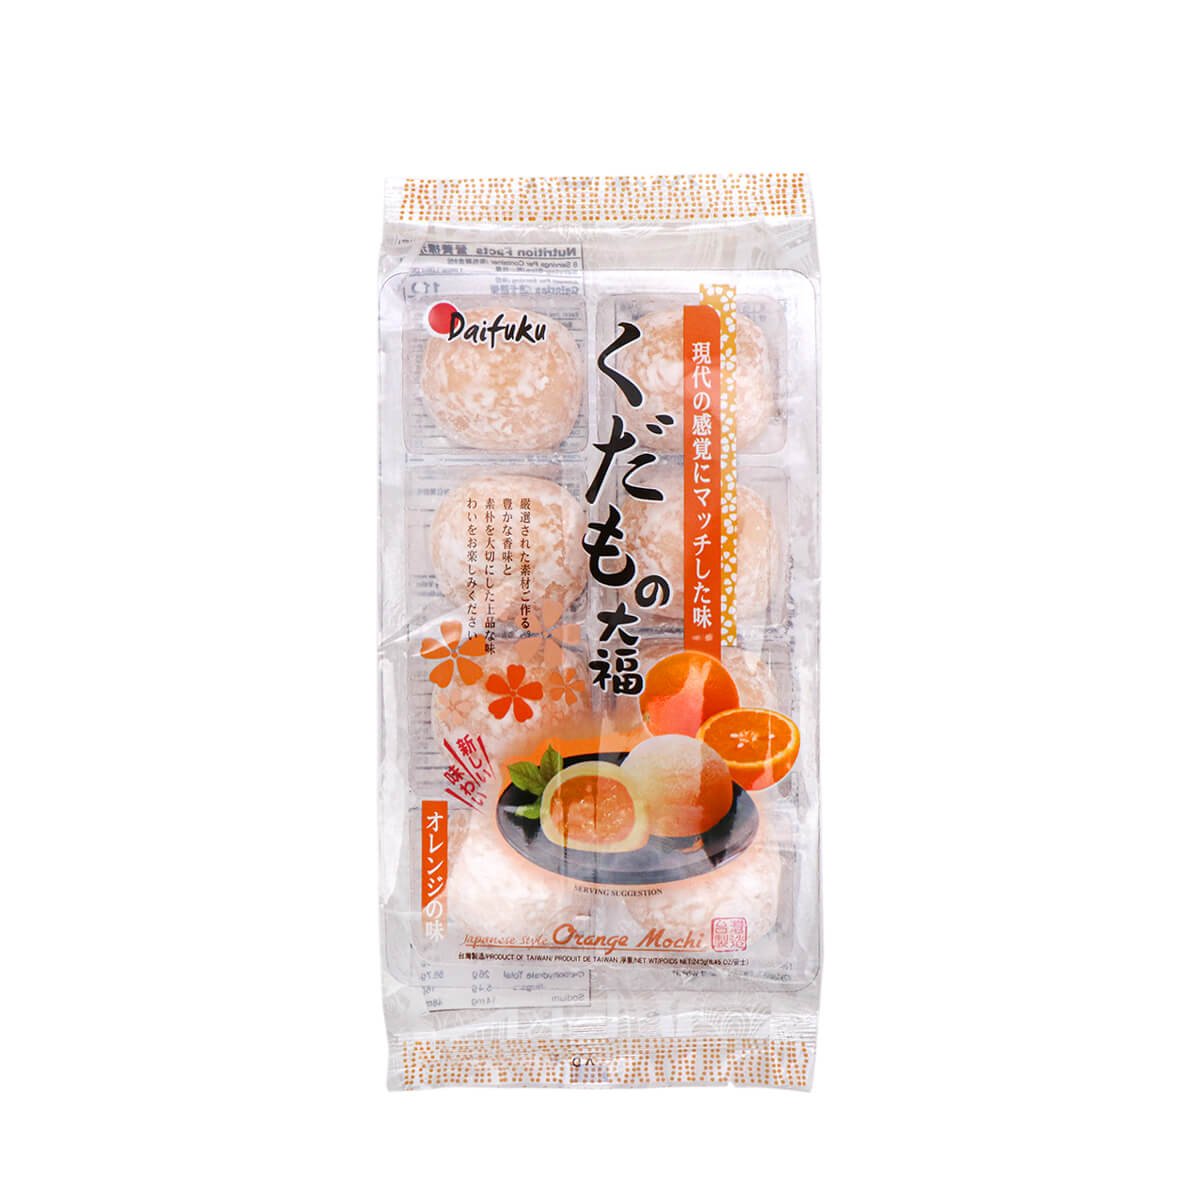 Daifuku Japanese Style Orange Mochi 8.45oz